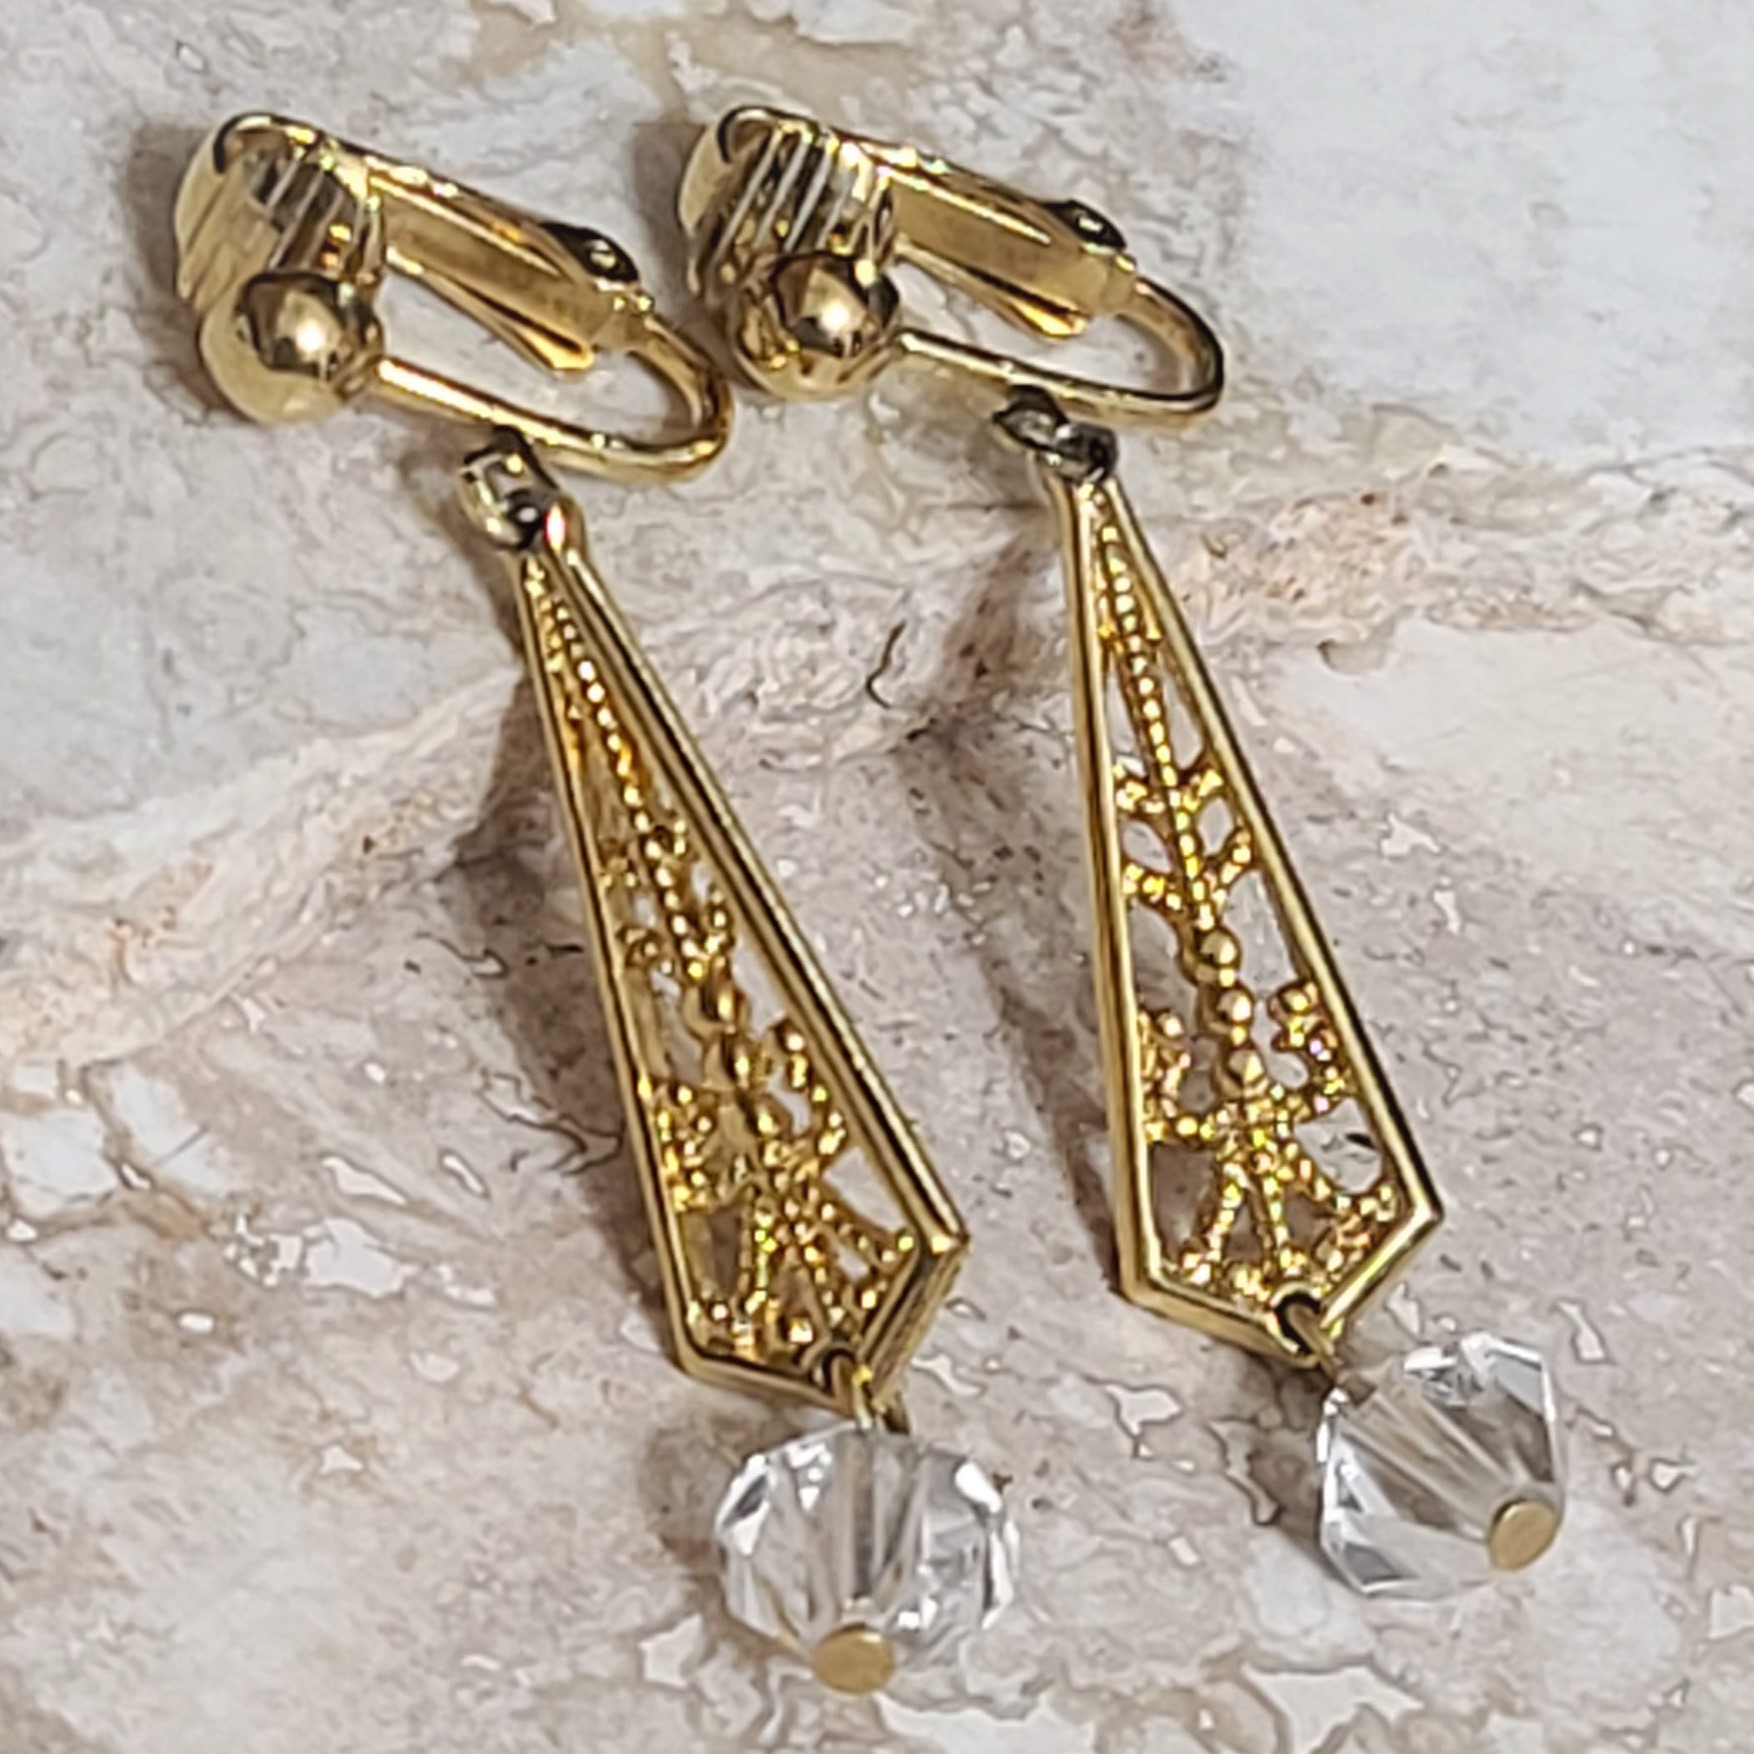 Art Deco Look Chandelier Goldtone & Crystal Earrings Clip Ons